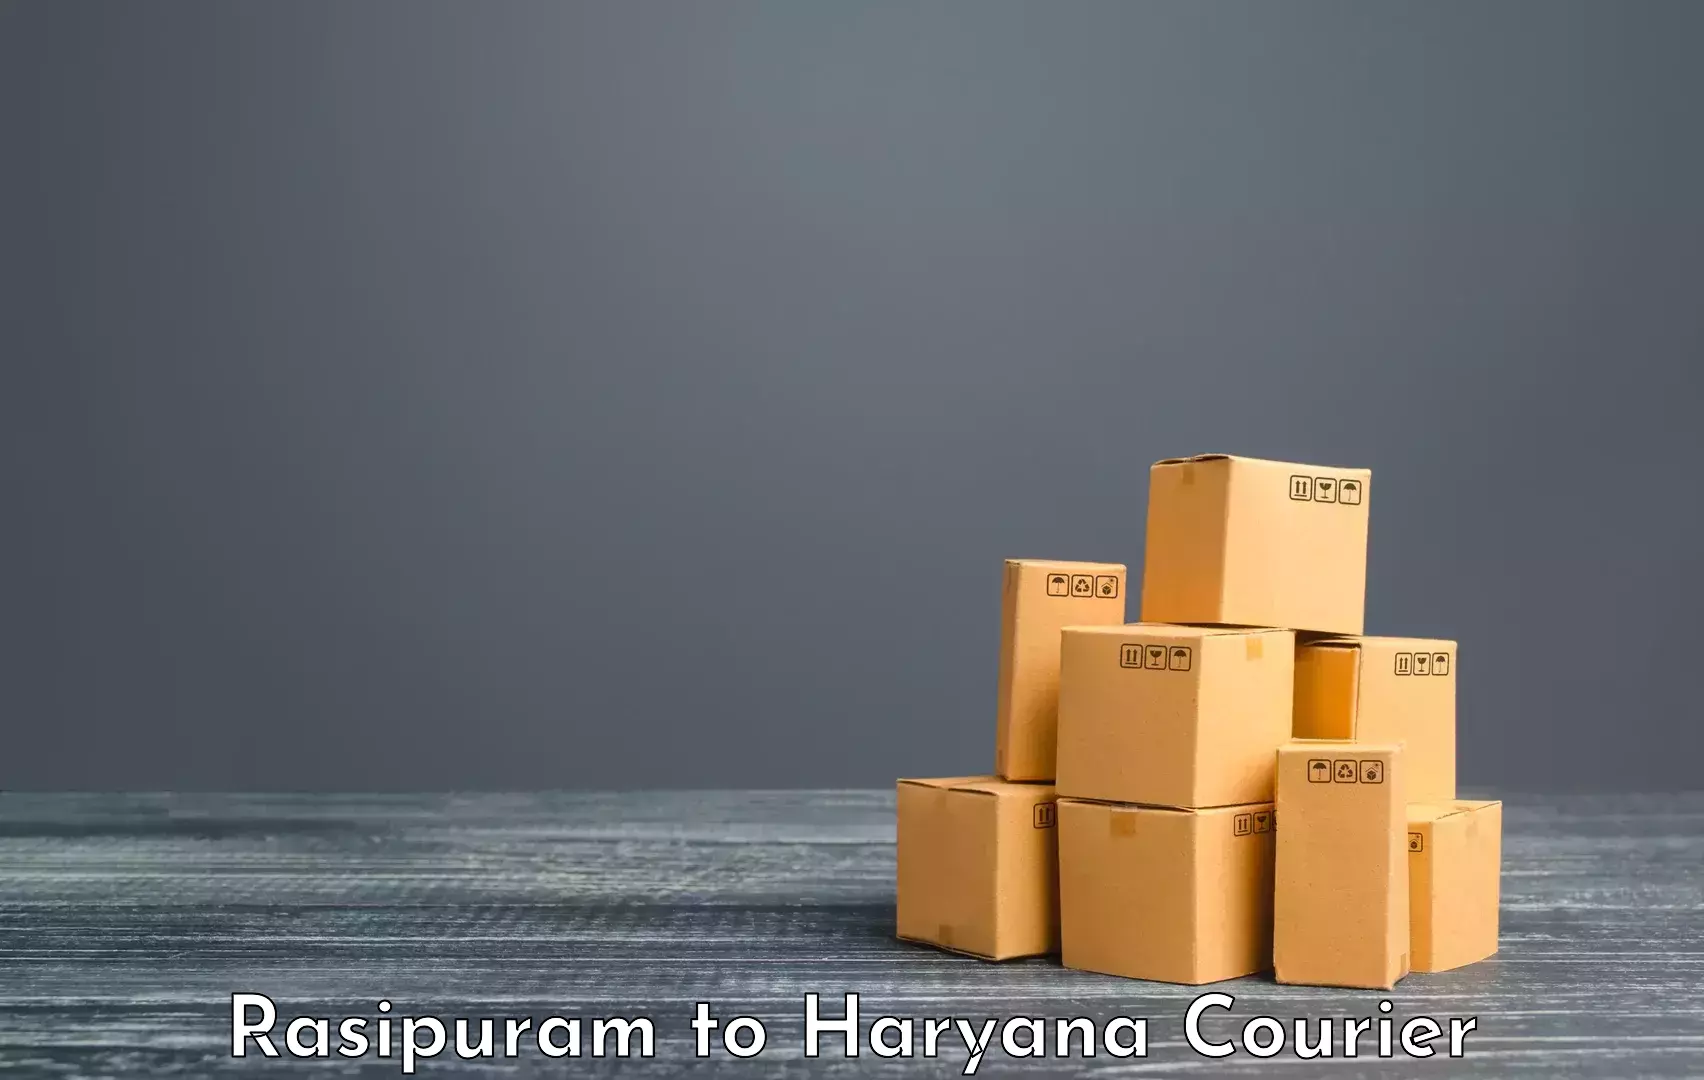 Baggage transport scheduler Rasipuram to Haryana